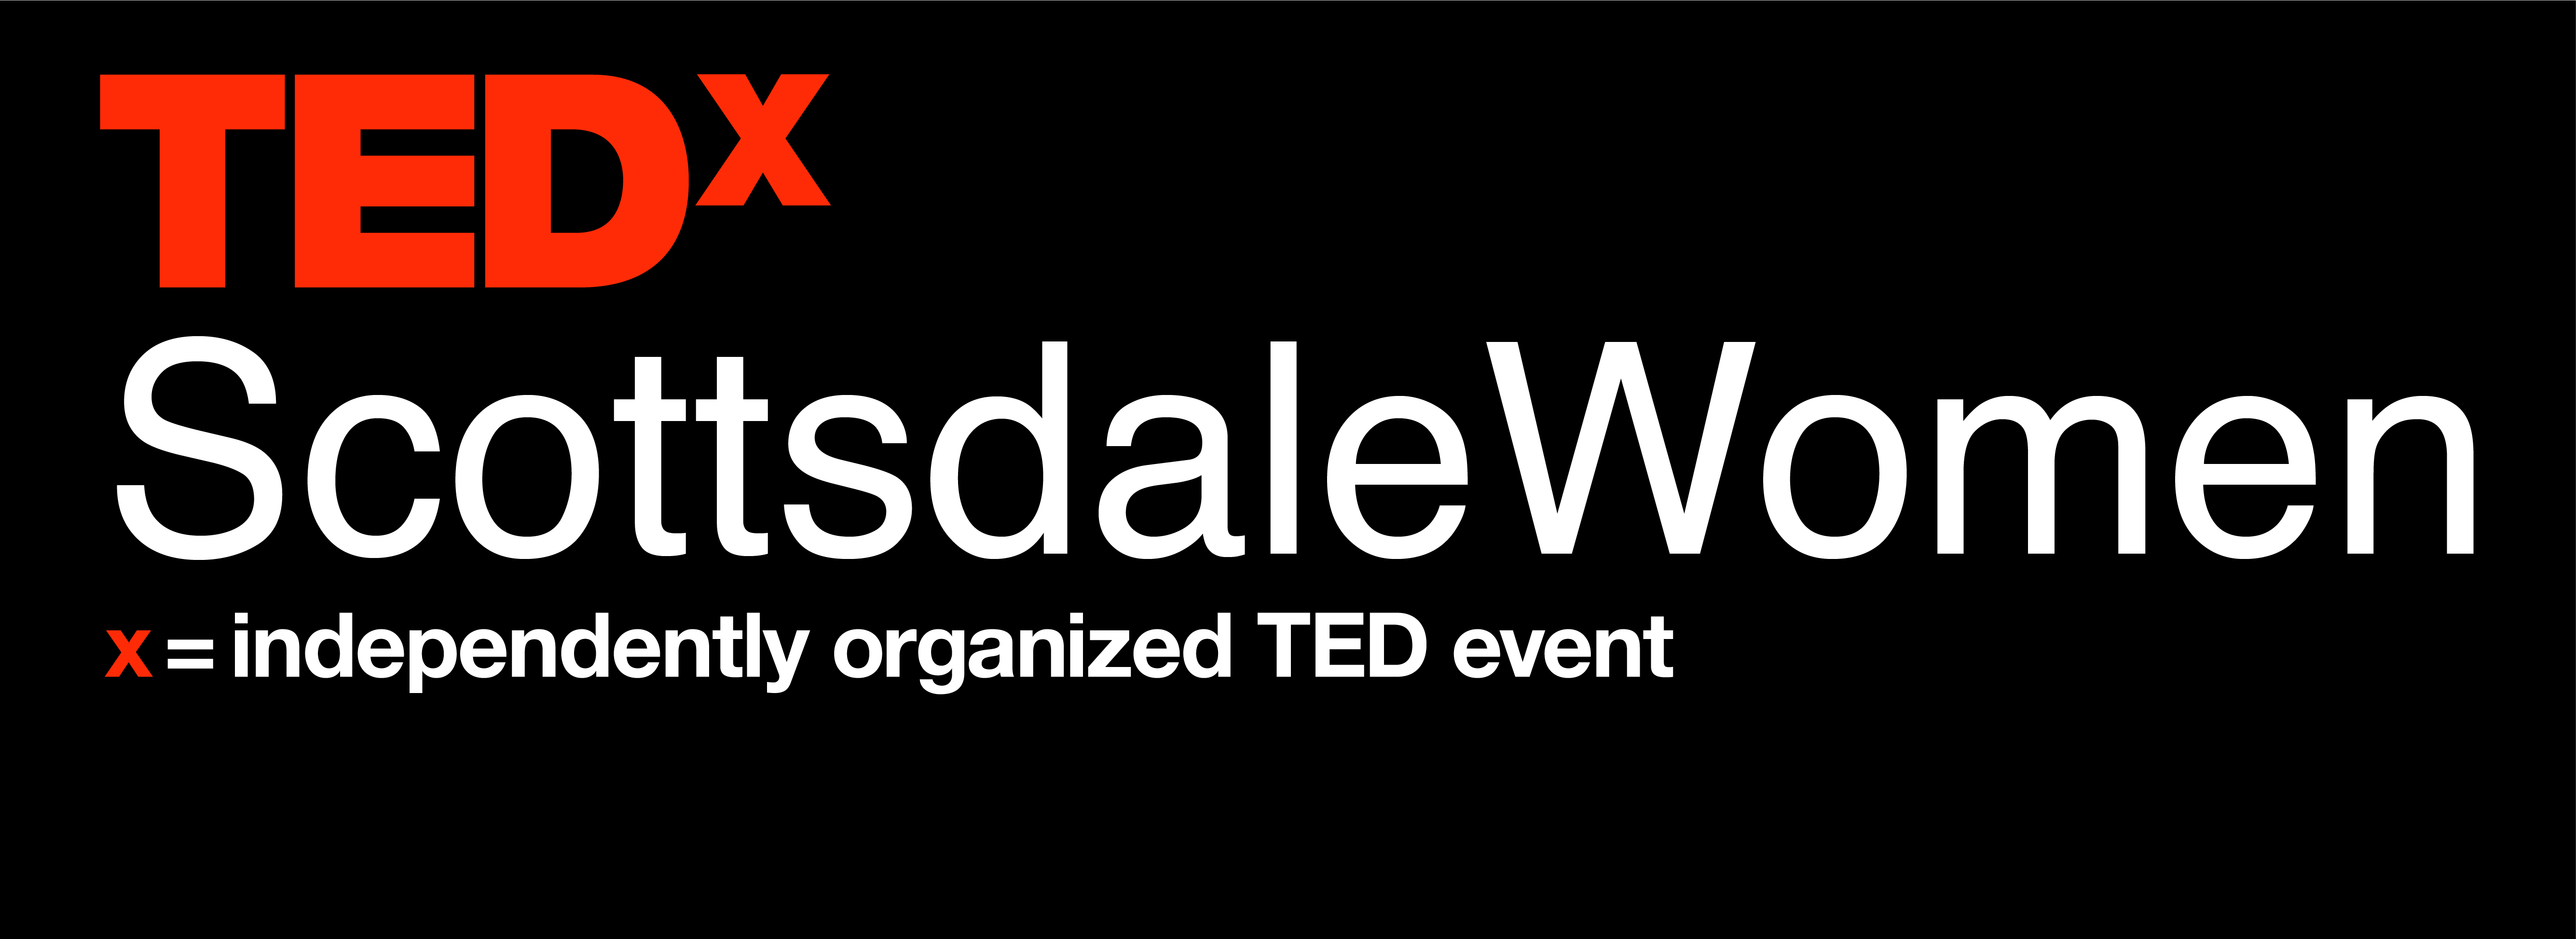 TEDx Scottsdale Women